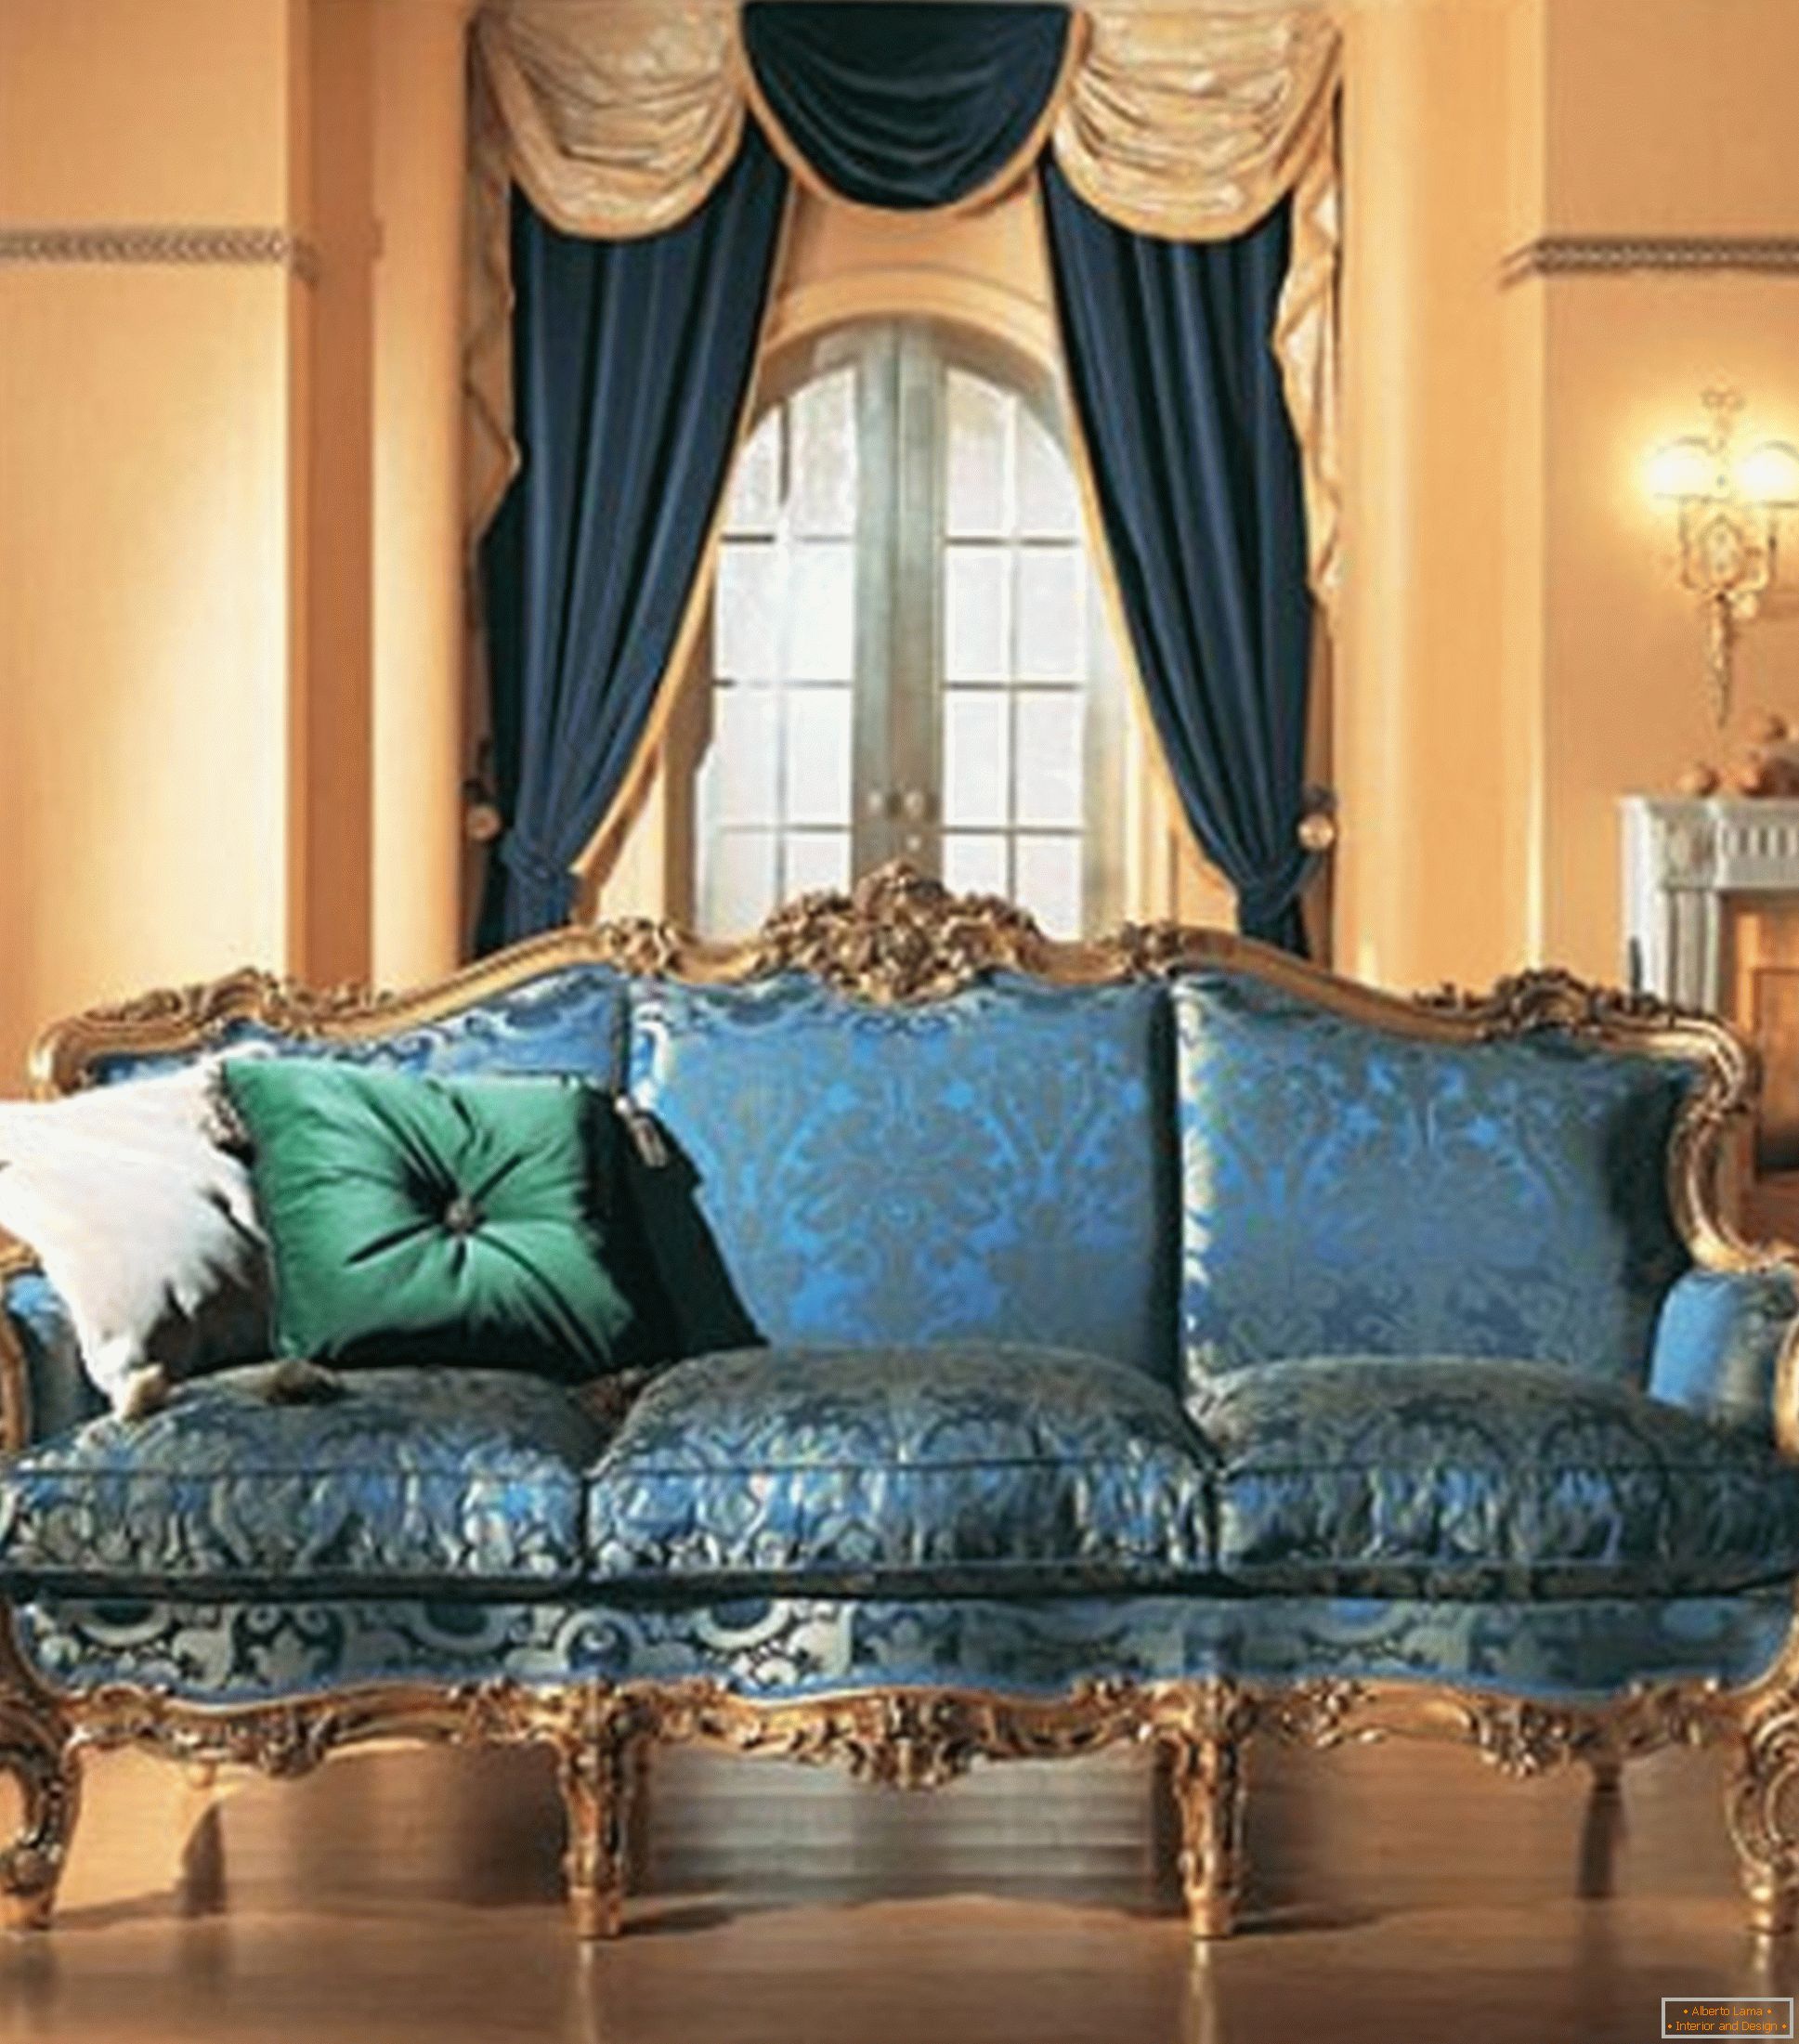 La combinazione di colori contrastanti nella decorazione del soggiorno in stile barocco.